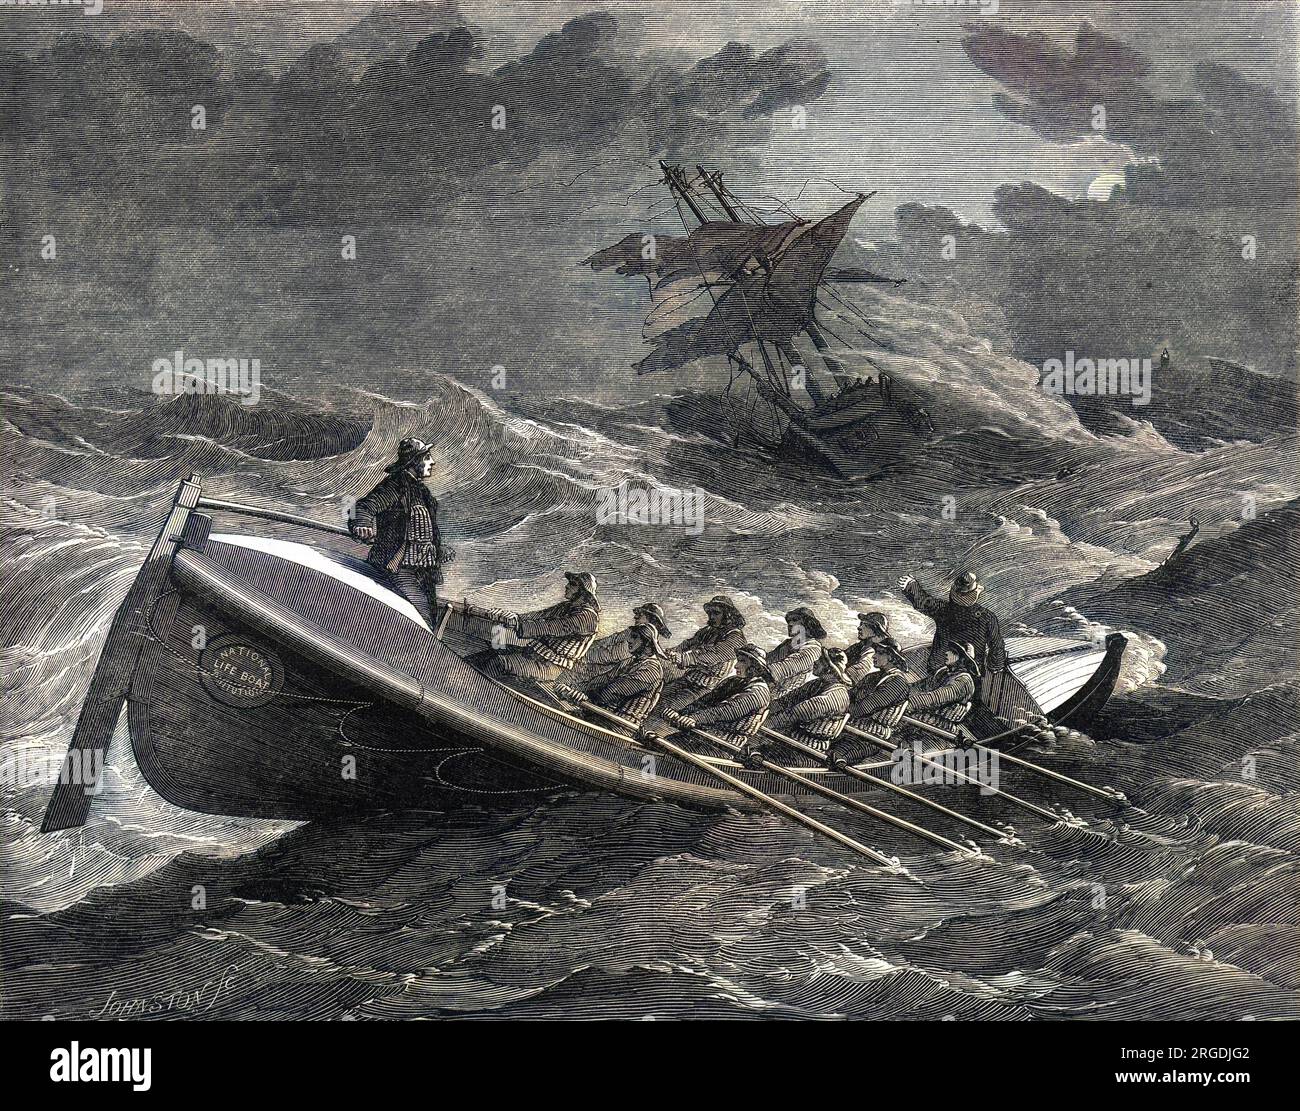 Il battello salvavita Tenby che procede al salvataggio dell'equipaggio della nave spagnola Nuevo Torcuvato, 1857. La barca di salvataggio porta il marchio del National Life Boat Institution. Foto Stock